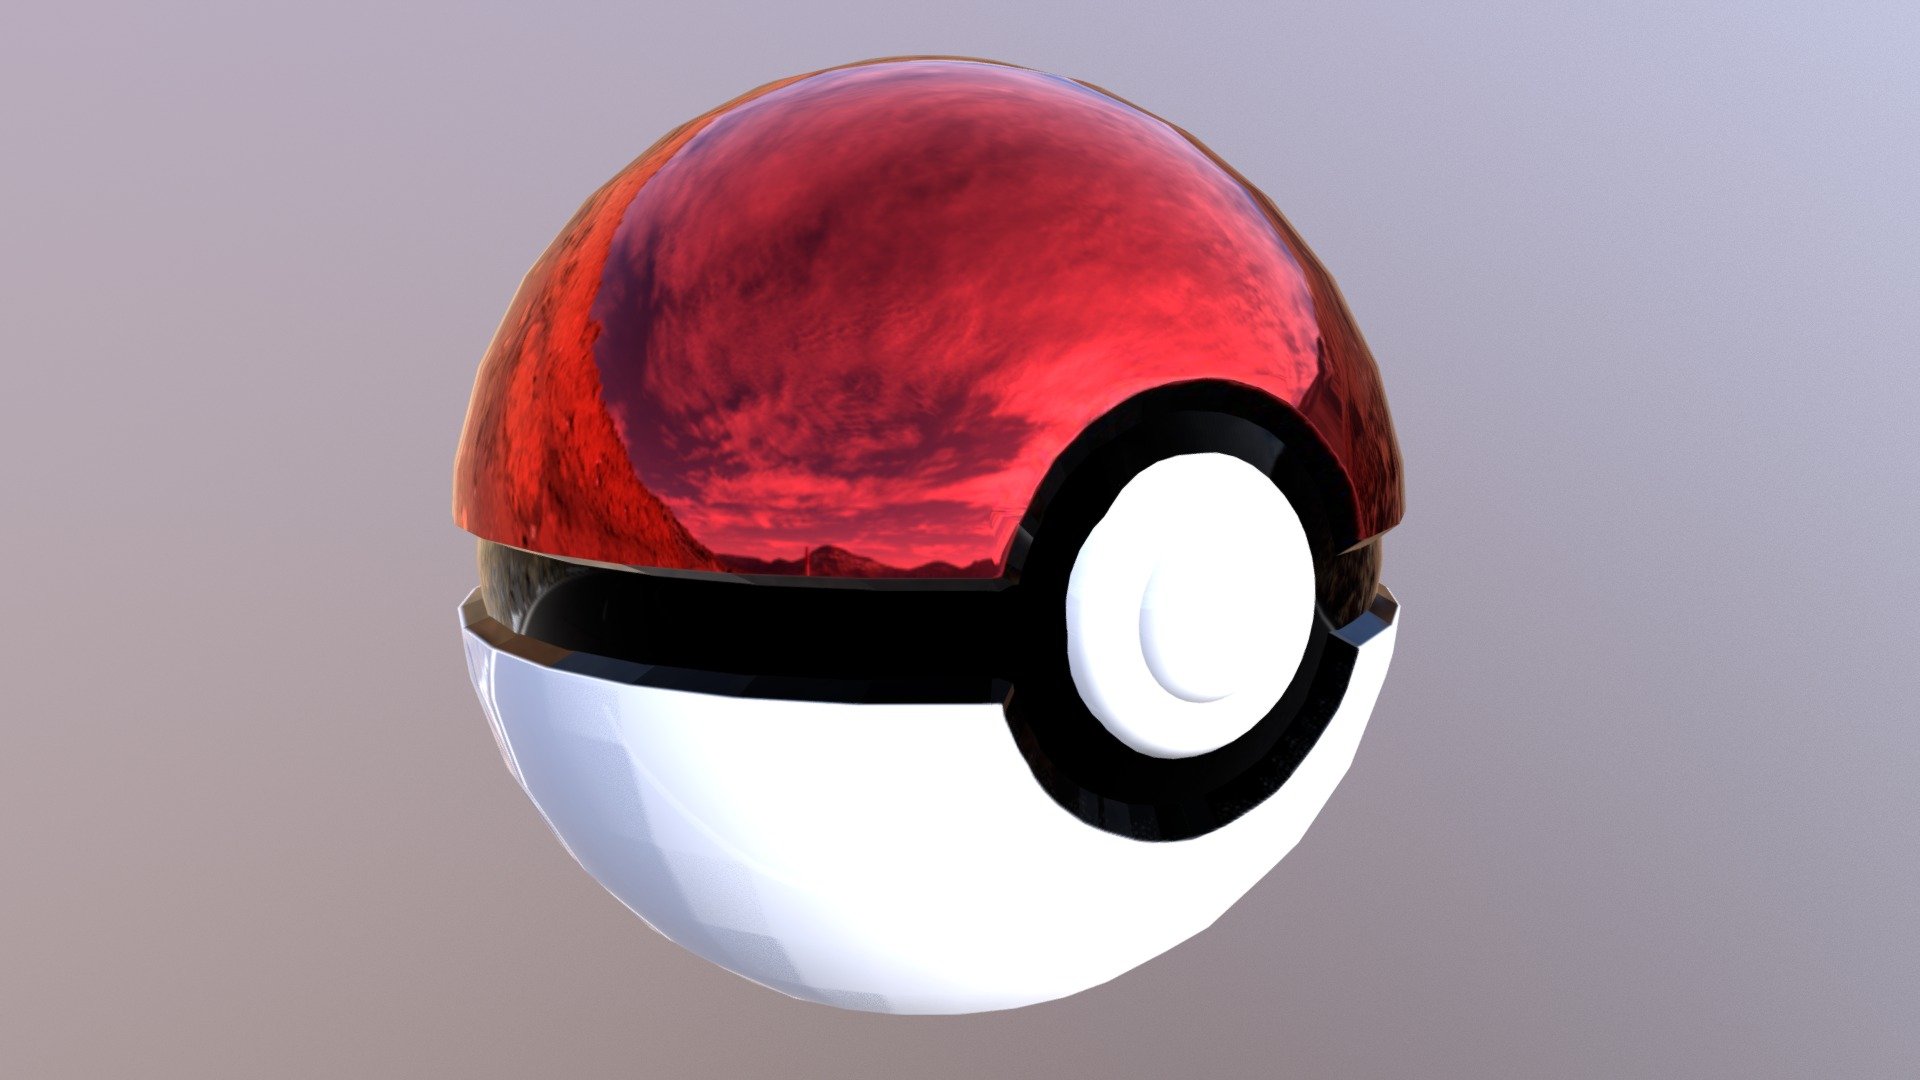 Pokeball 3D Illustration download in PNG, OBJ or Blend format